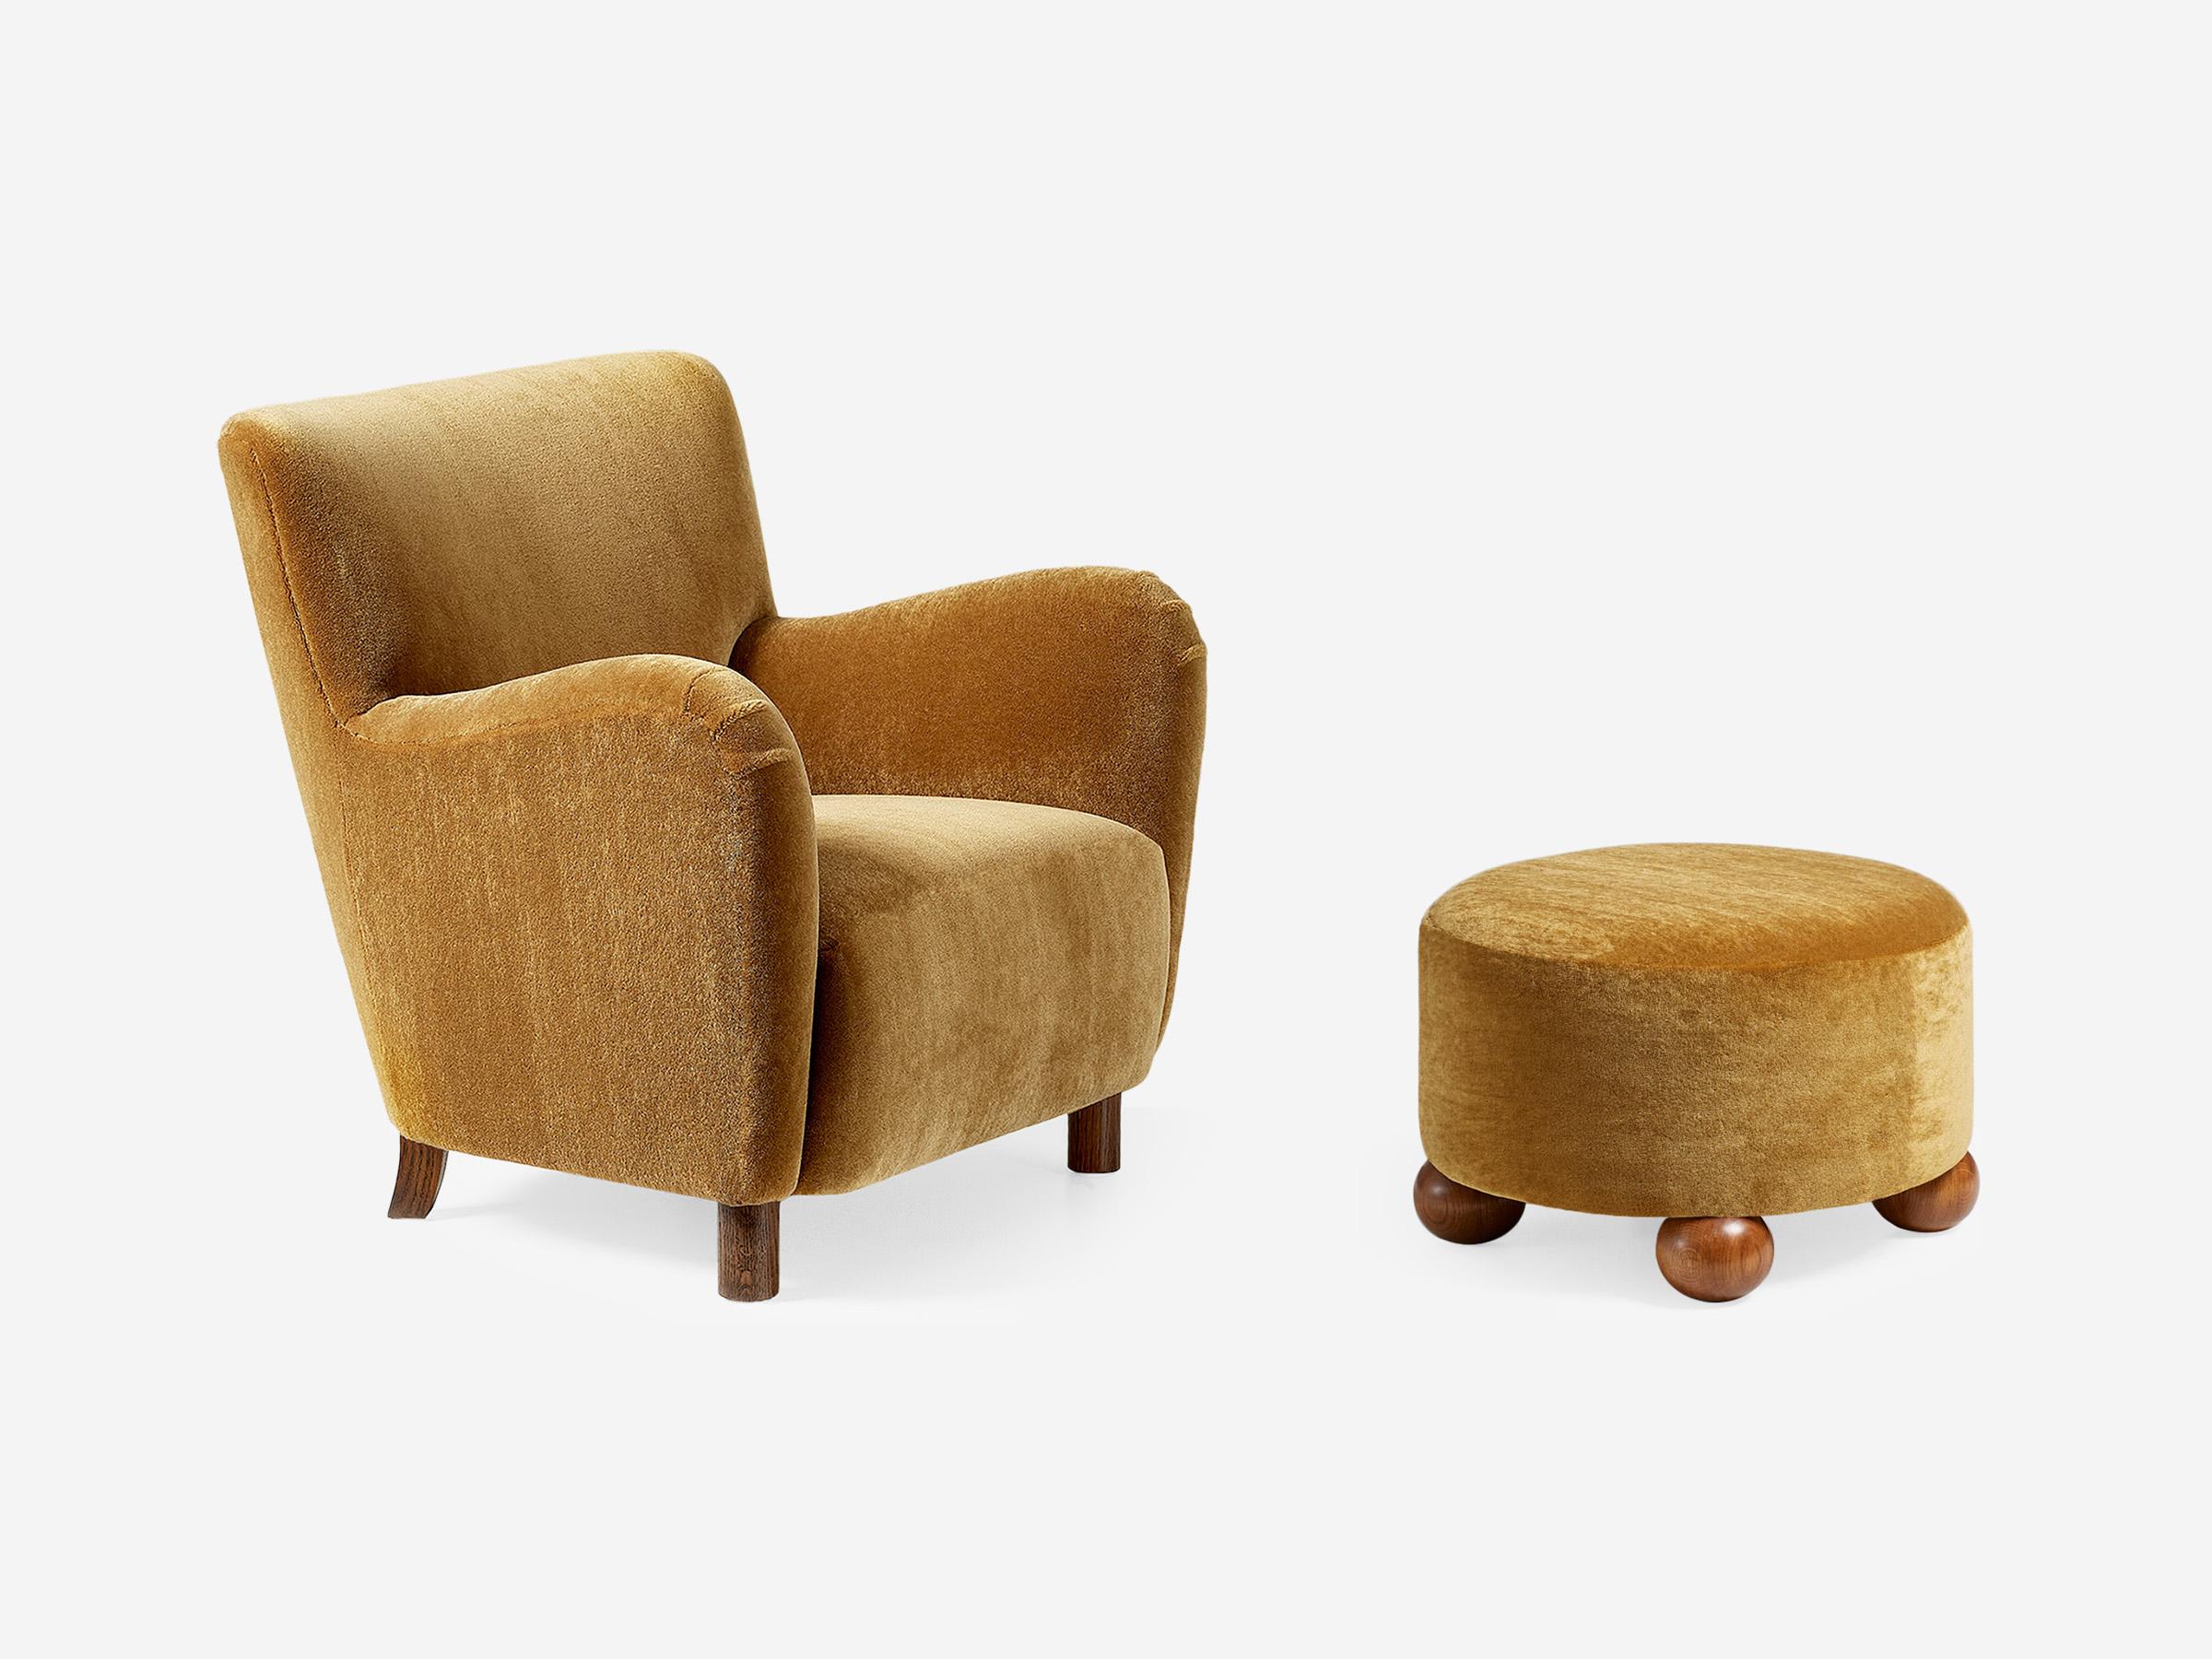 Dagmar - 54 Stuhl & Luupo Ottomane

Der 54 Lounge Chair schafft mühelos den Spagat zwischen traditioneller und zeitgenössischer Ästhetik und passt damit hervorragend zu einer Vielzahl von Inneneinrichtungen. Der 54 Chair wurde vom Dagmar Studio Team